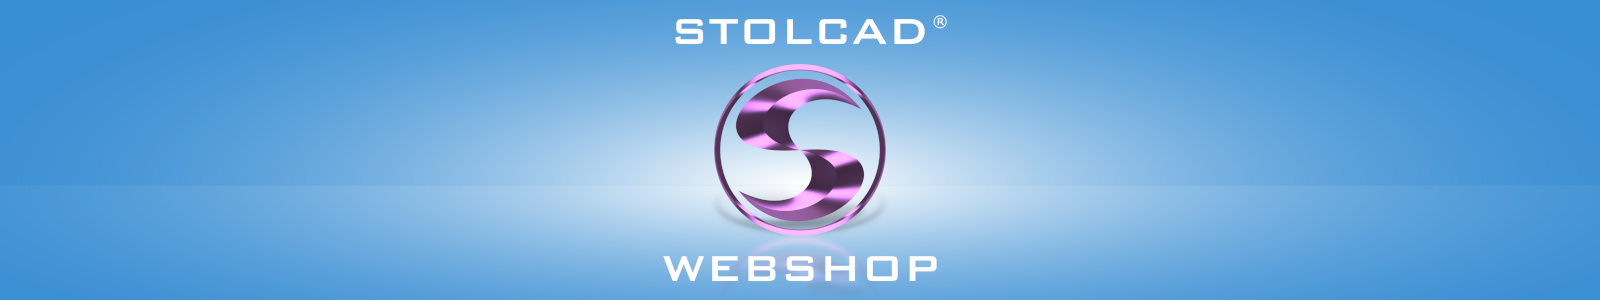 Stolcad Webshop - site pentru comercianți pentru a oferta ferestre, uși și jaluzele